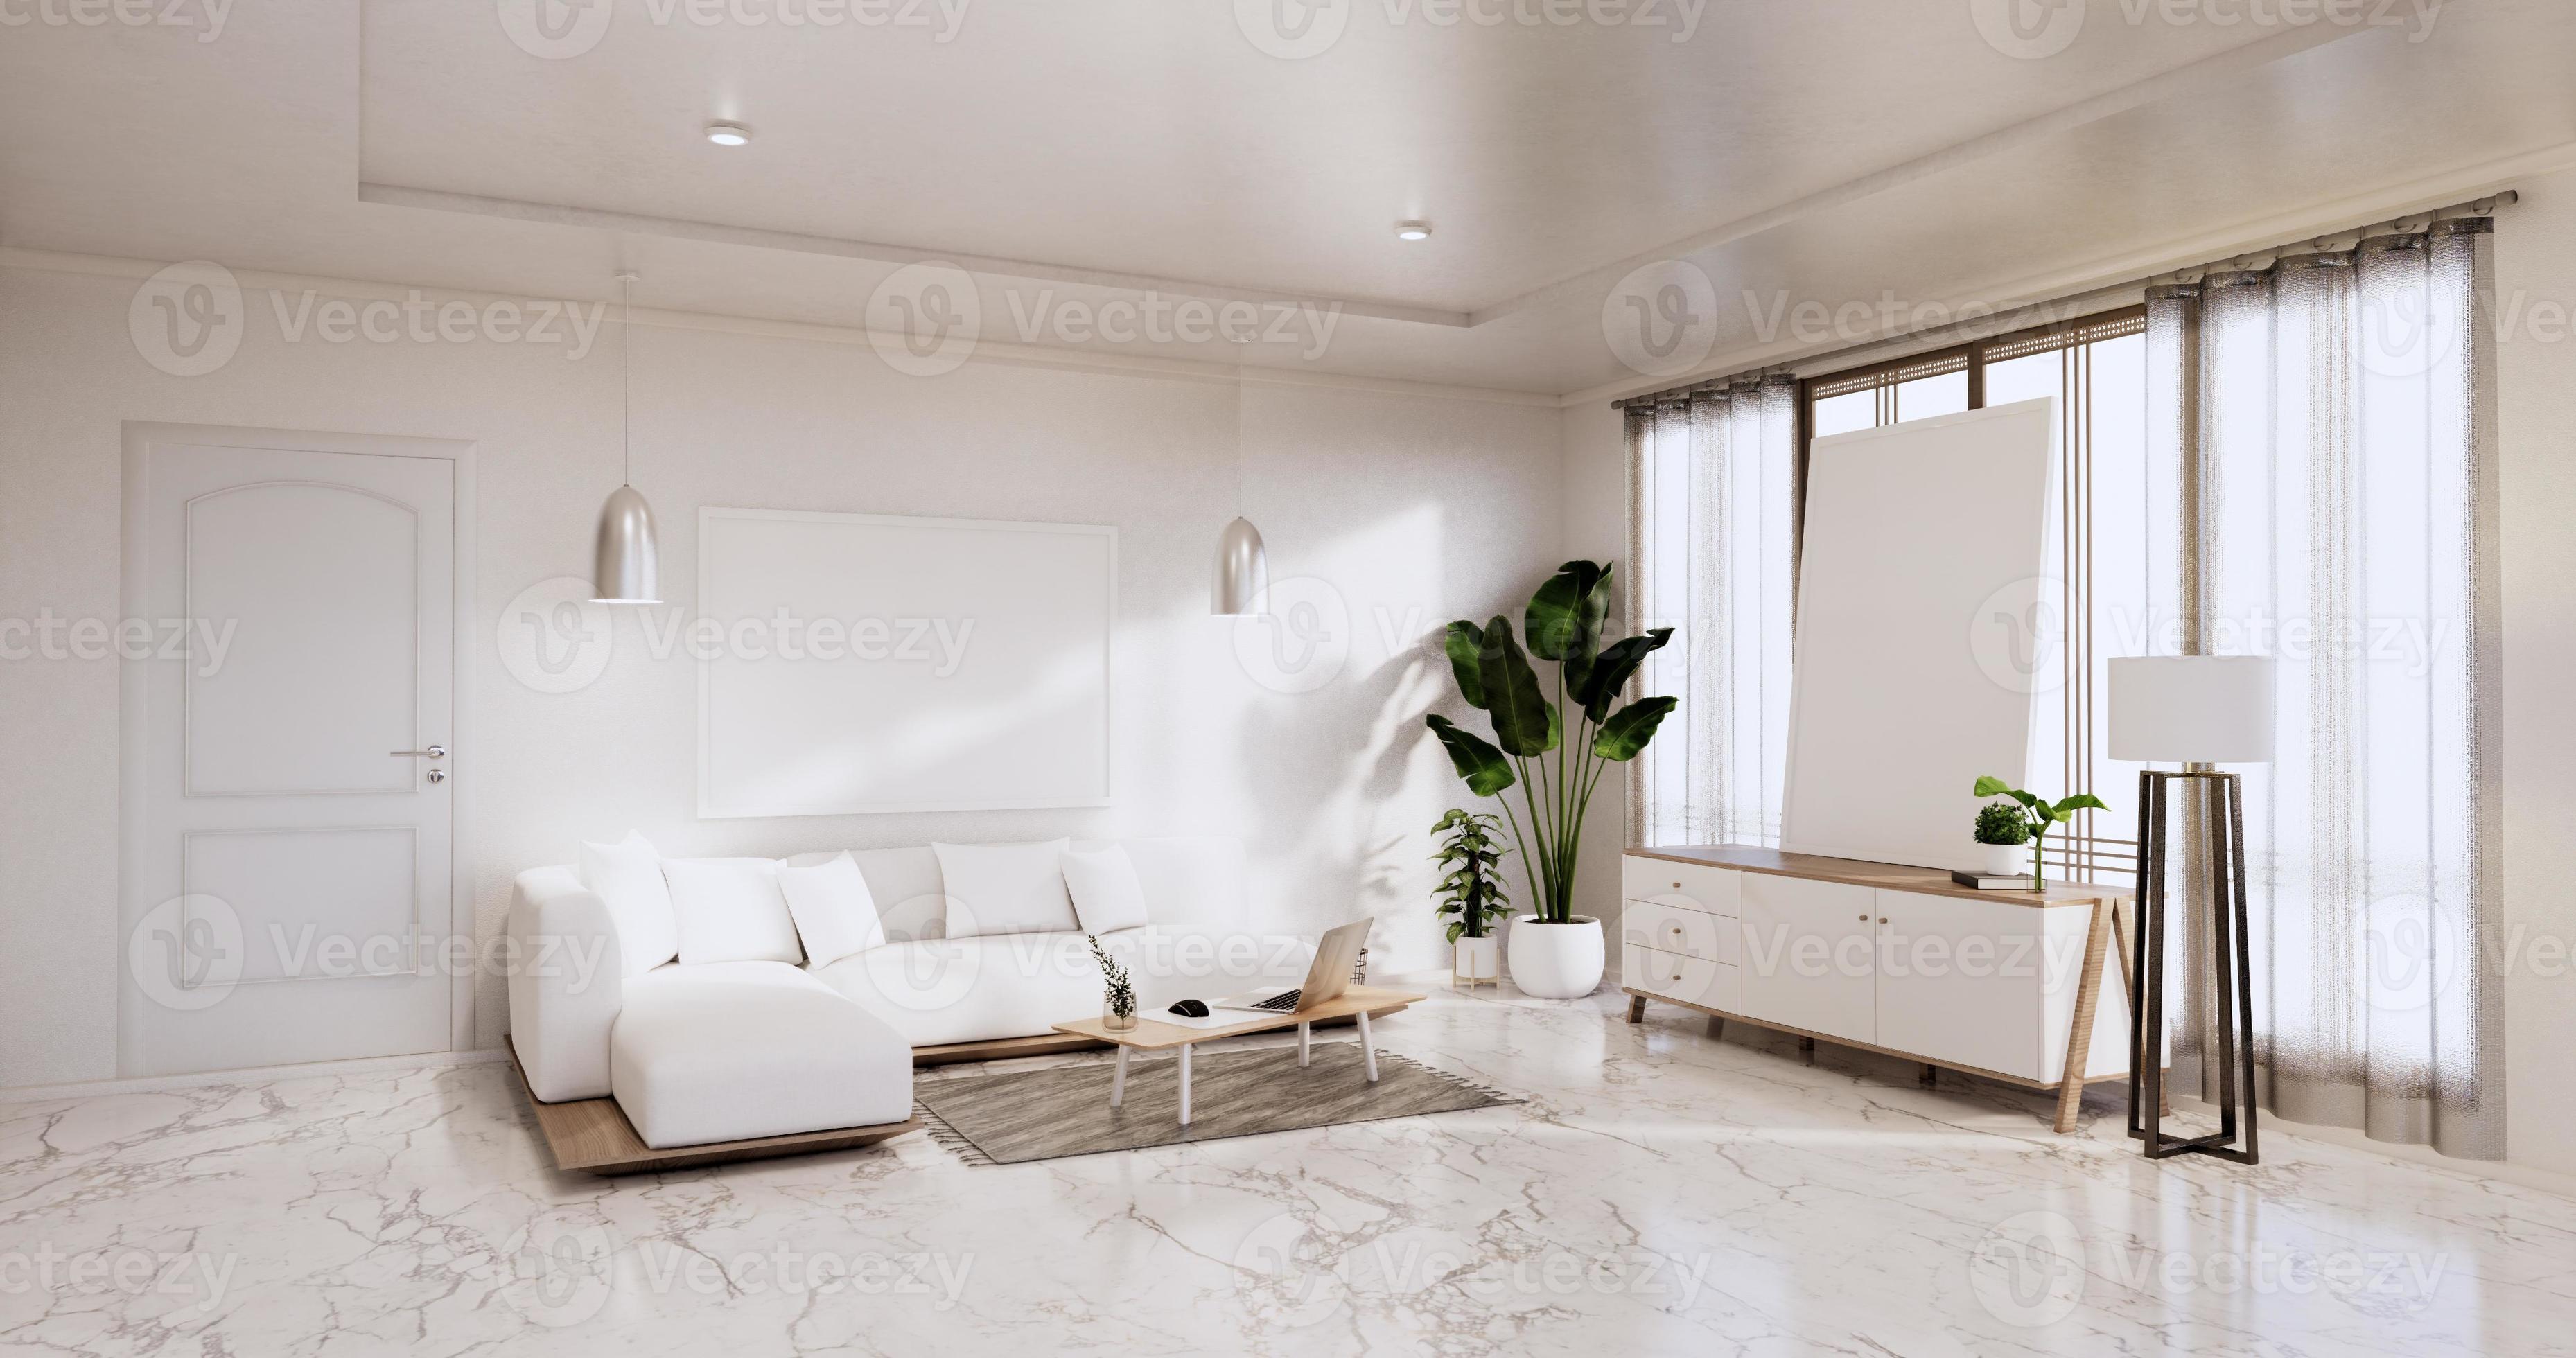 Interieur, Wohnzimmer modern minimalistisch hat Sofa und Schrank, Pflanzen, Lampe auf weißer Wand und Granitfliesenboden. 3D-Rendering foto